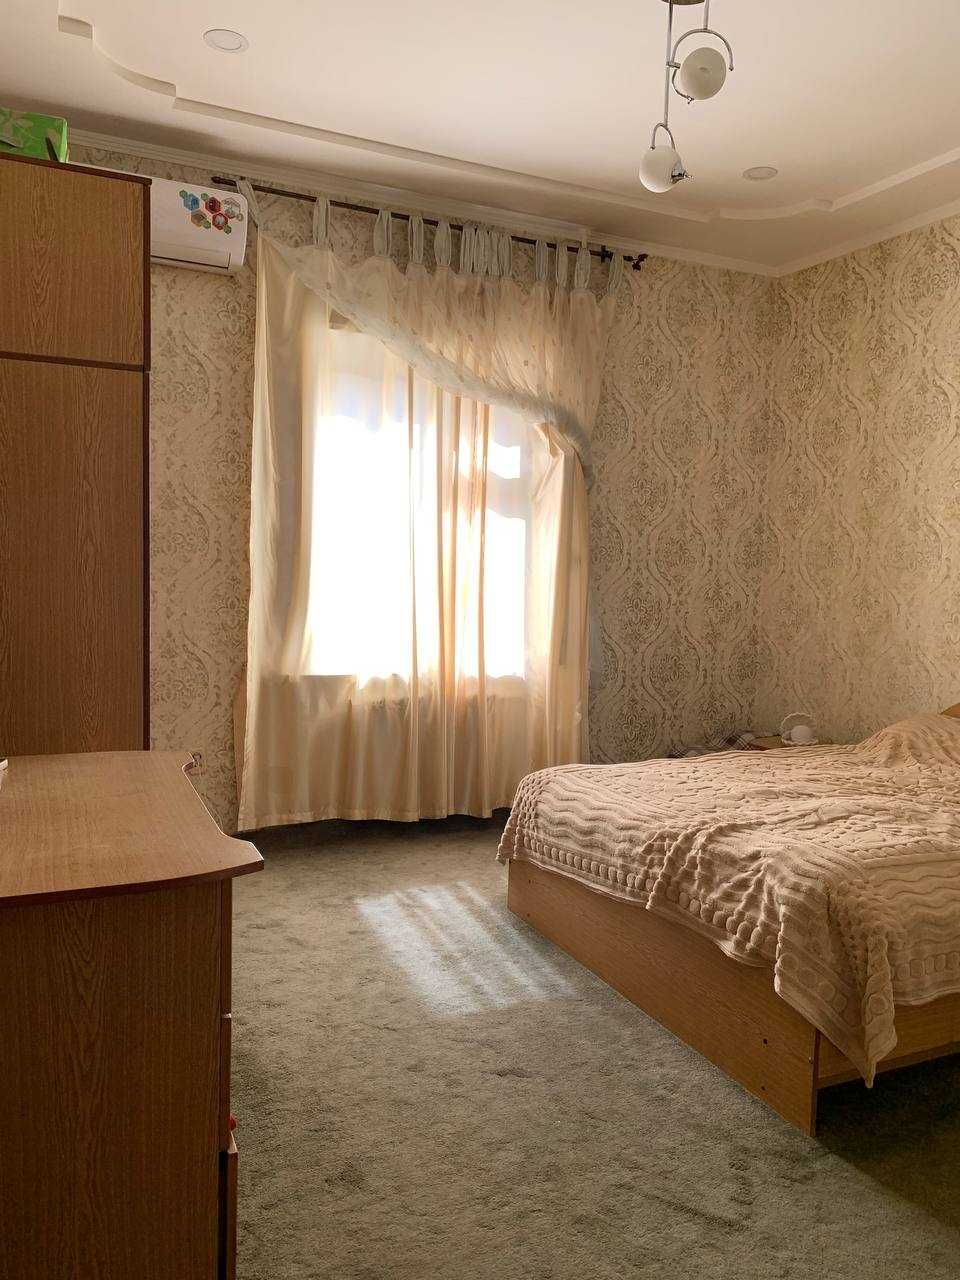 Продается в Мирзо-Улугбекский р-не (ул.Олтинтепа) дом на 11 сотках